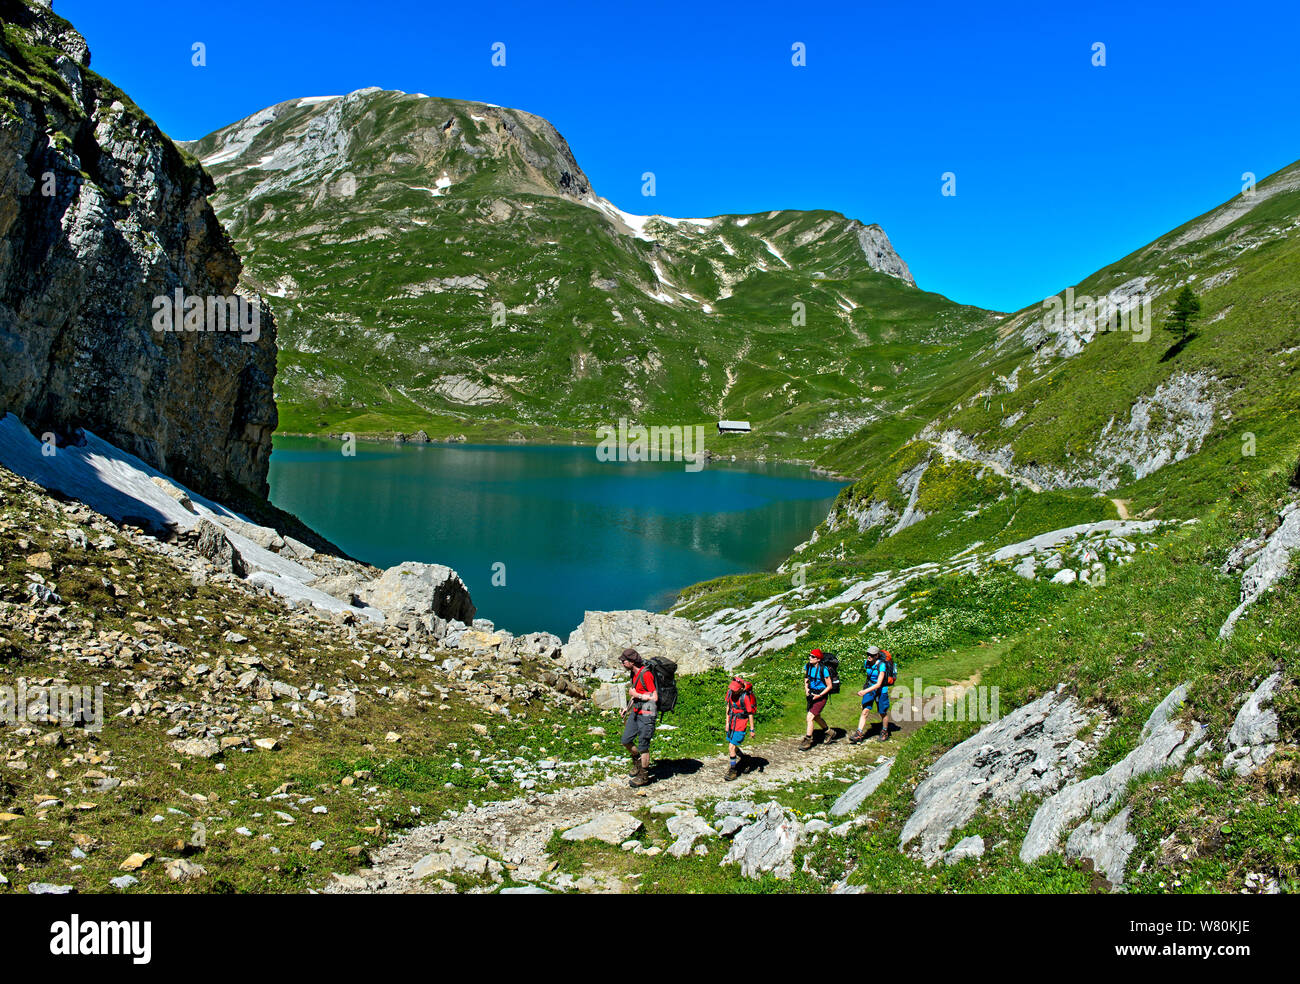 Los excursionistas en el lago de montaña Iffigsee, Lenk, Suiza Foto de stock